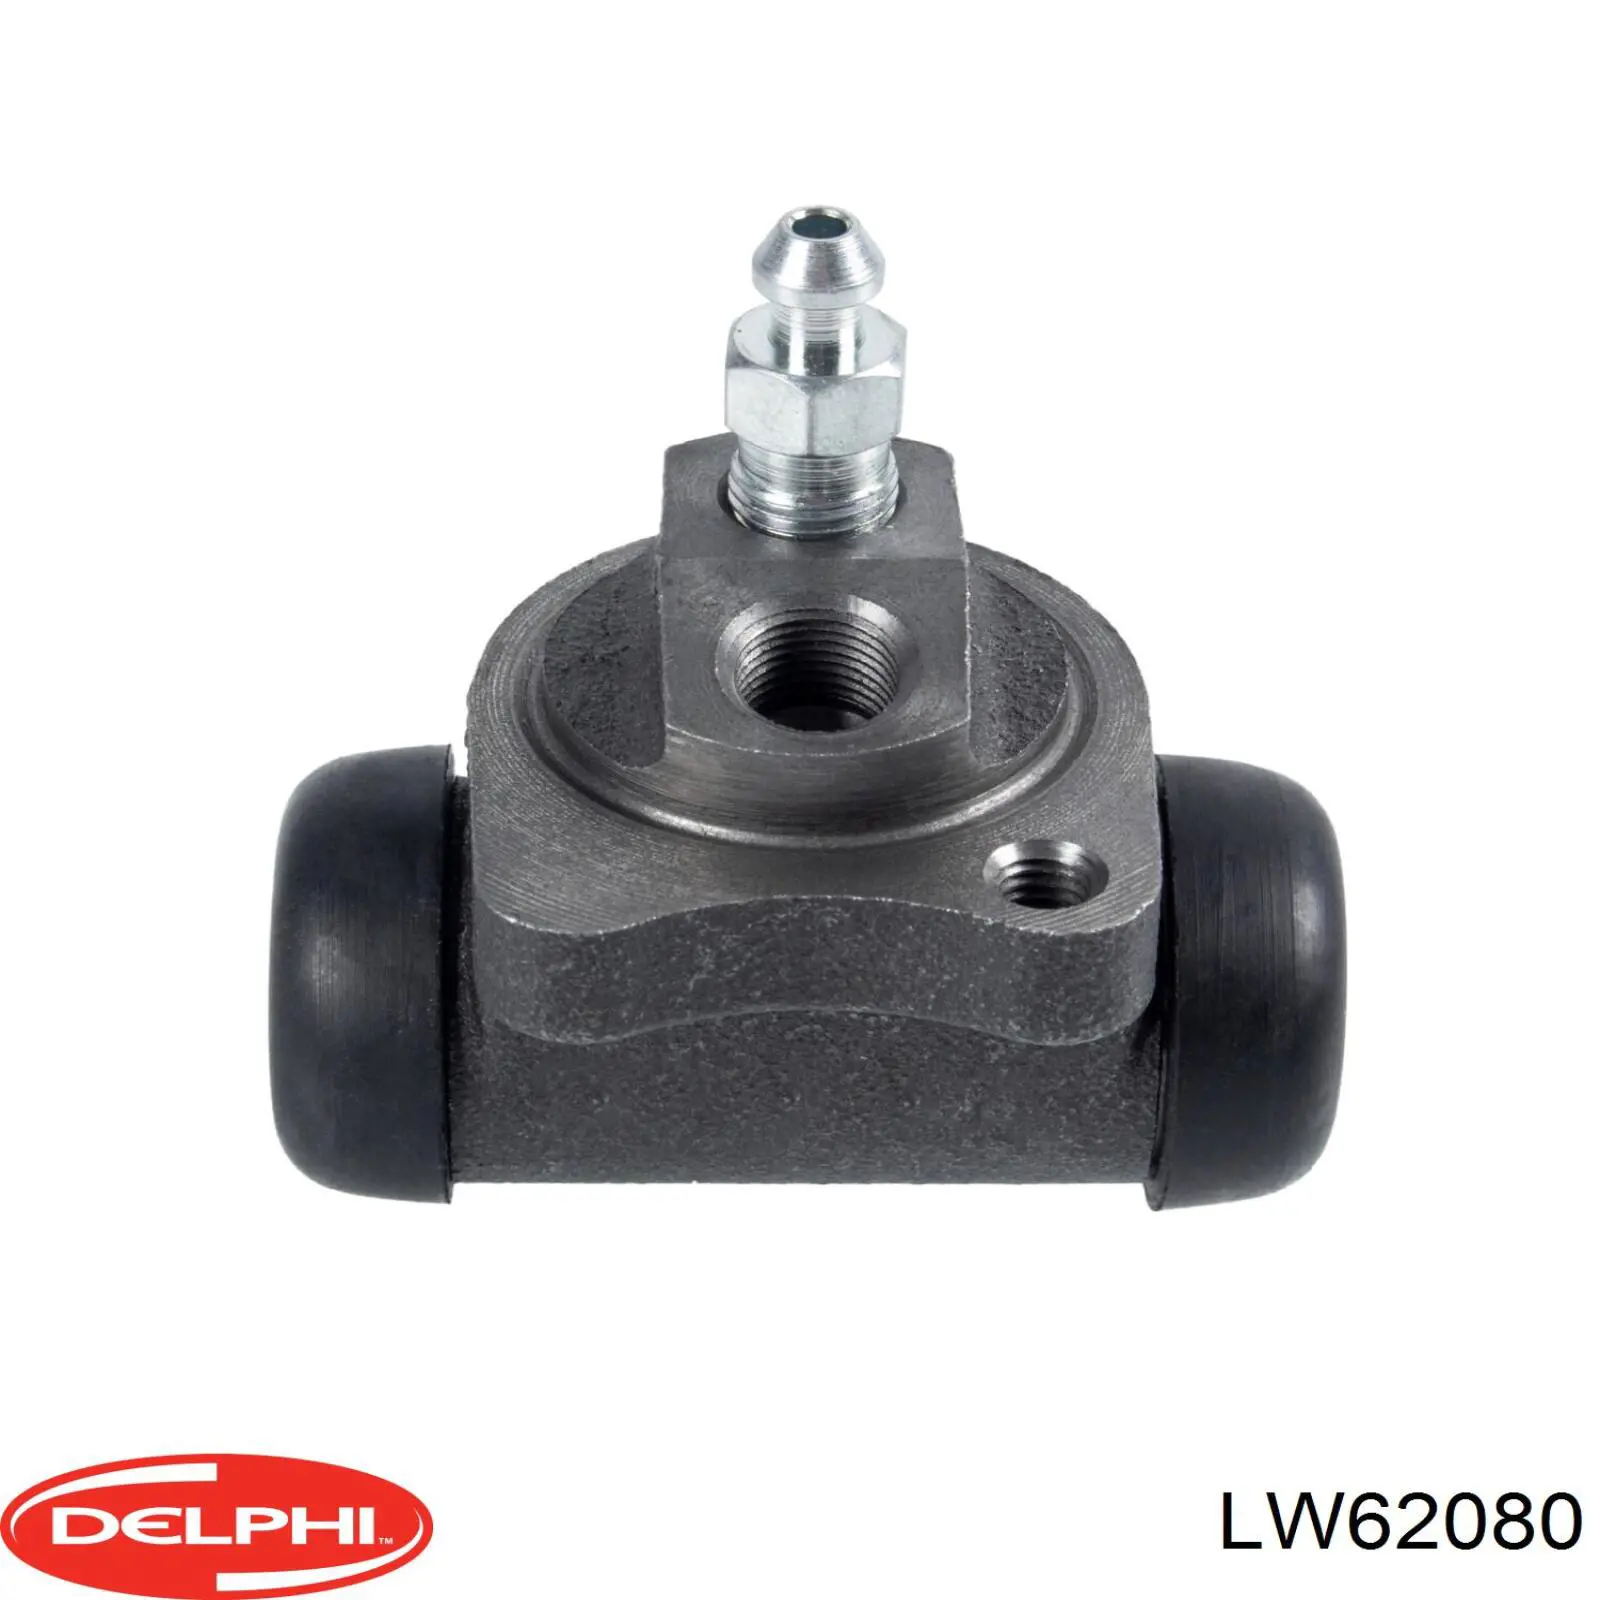 LW62080 Delphi цилиндр тормозной колесный рабочий задний